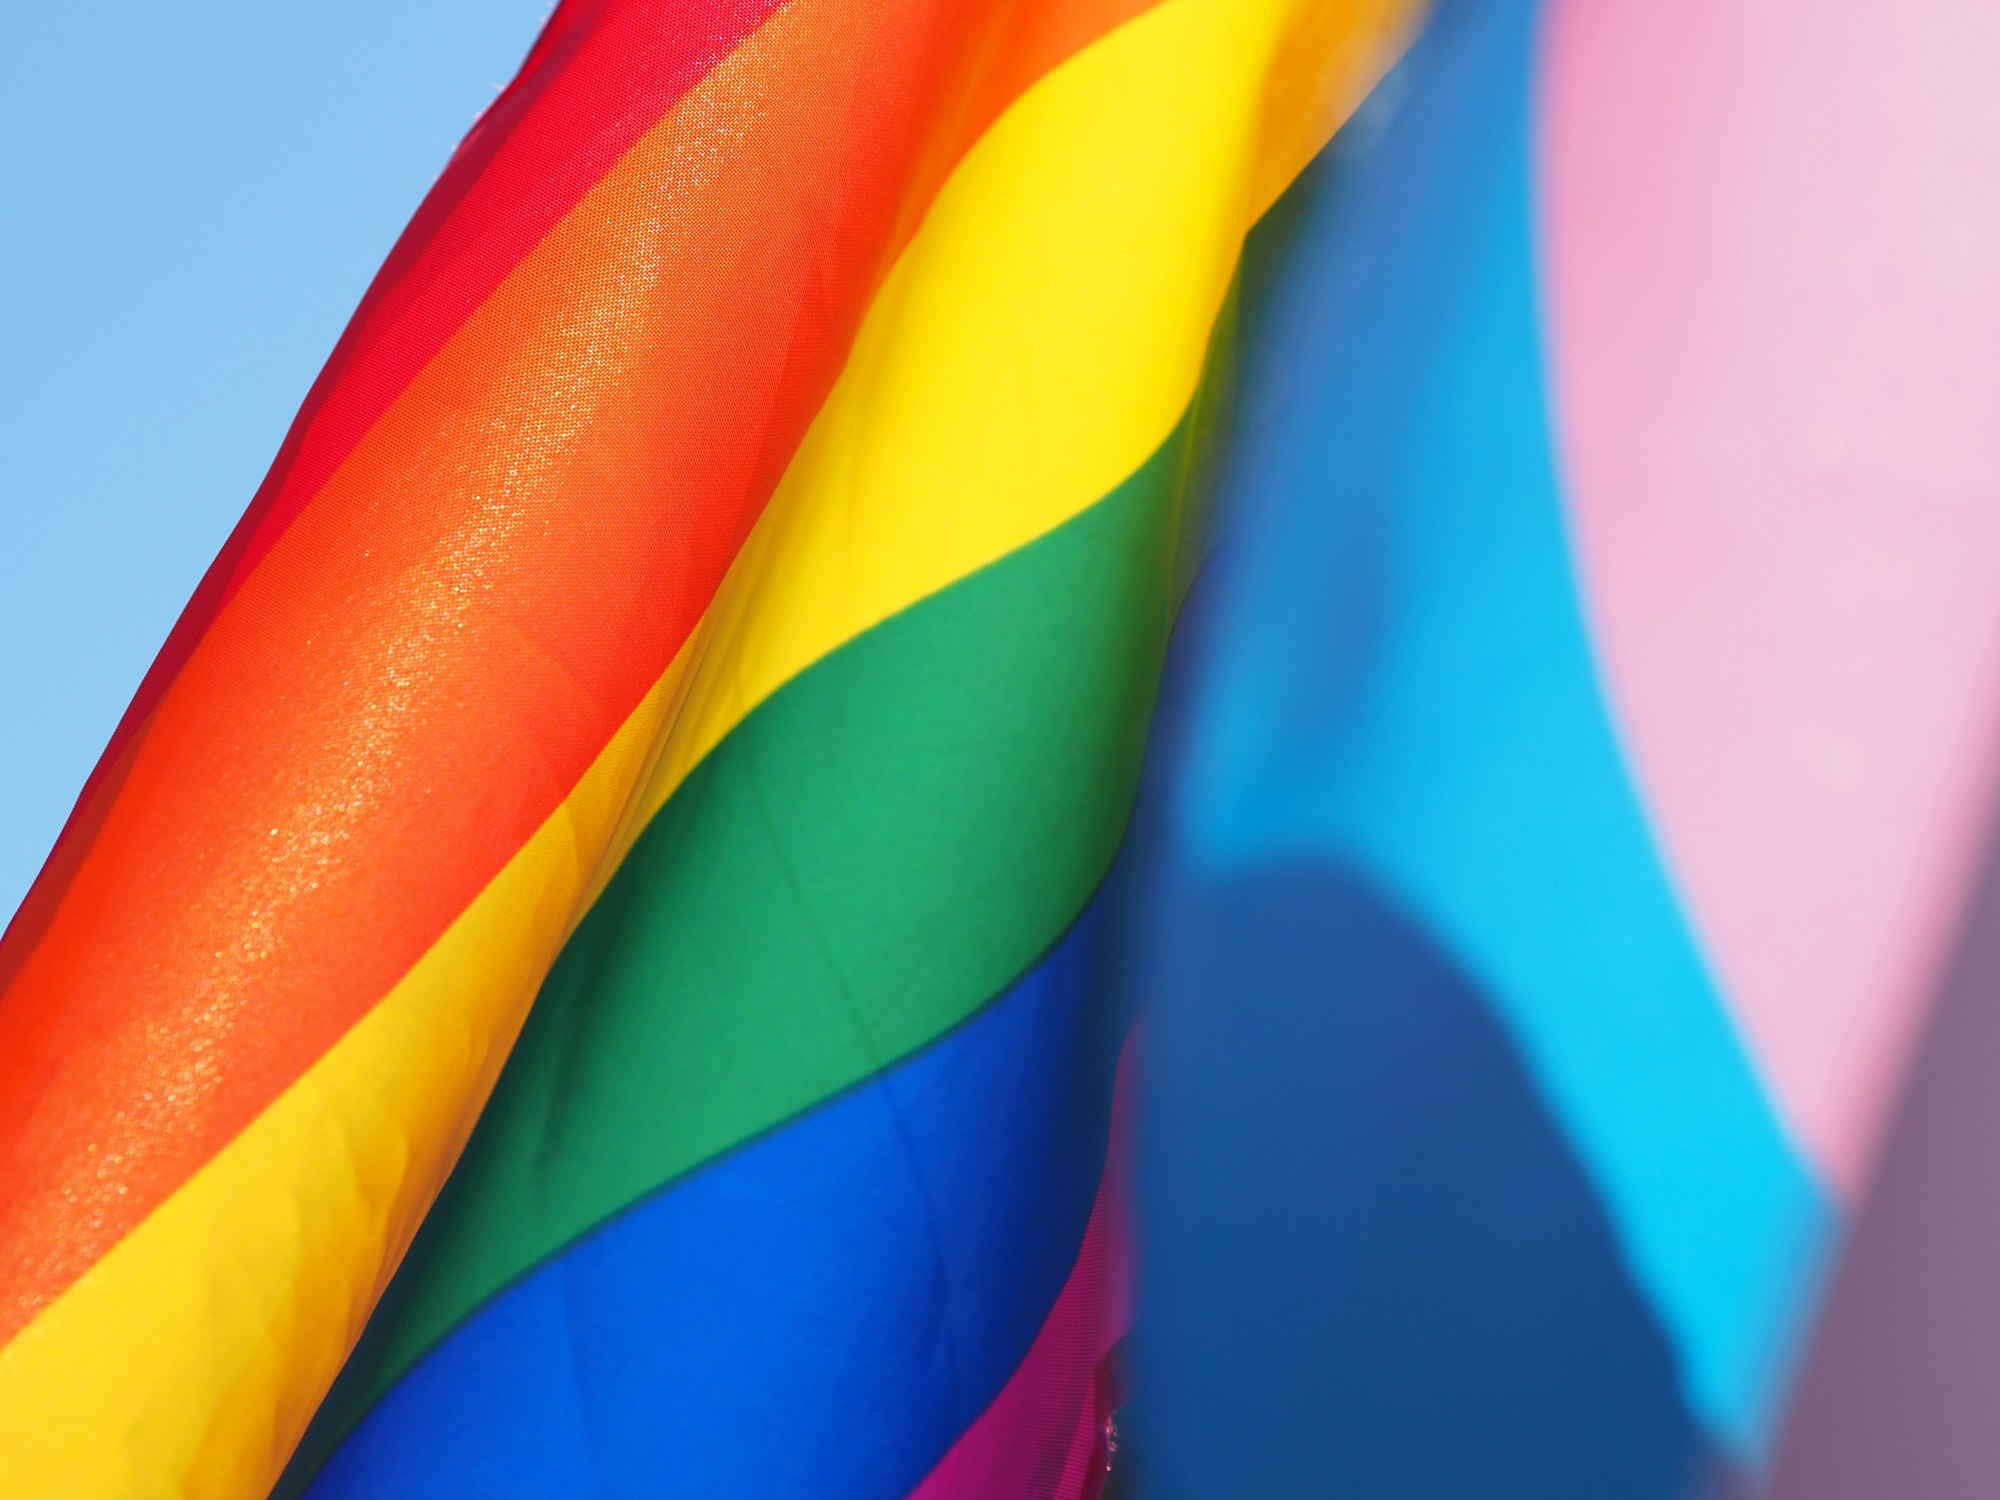 Discurso de ódio contra o coletivo LGBTQIA+ cresce quase 10% em quatro anos